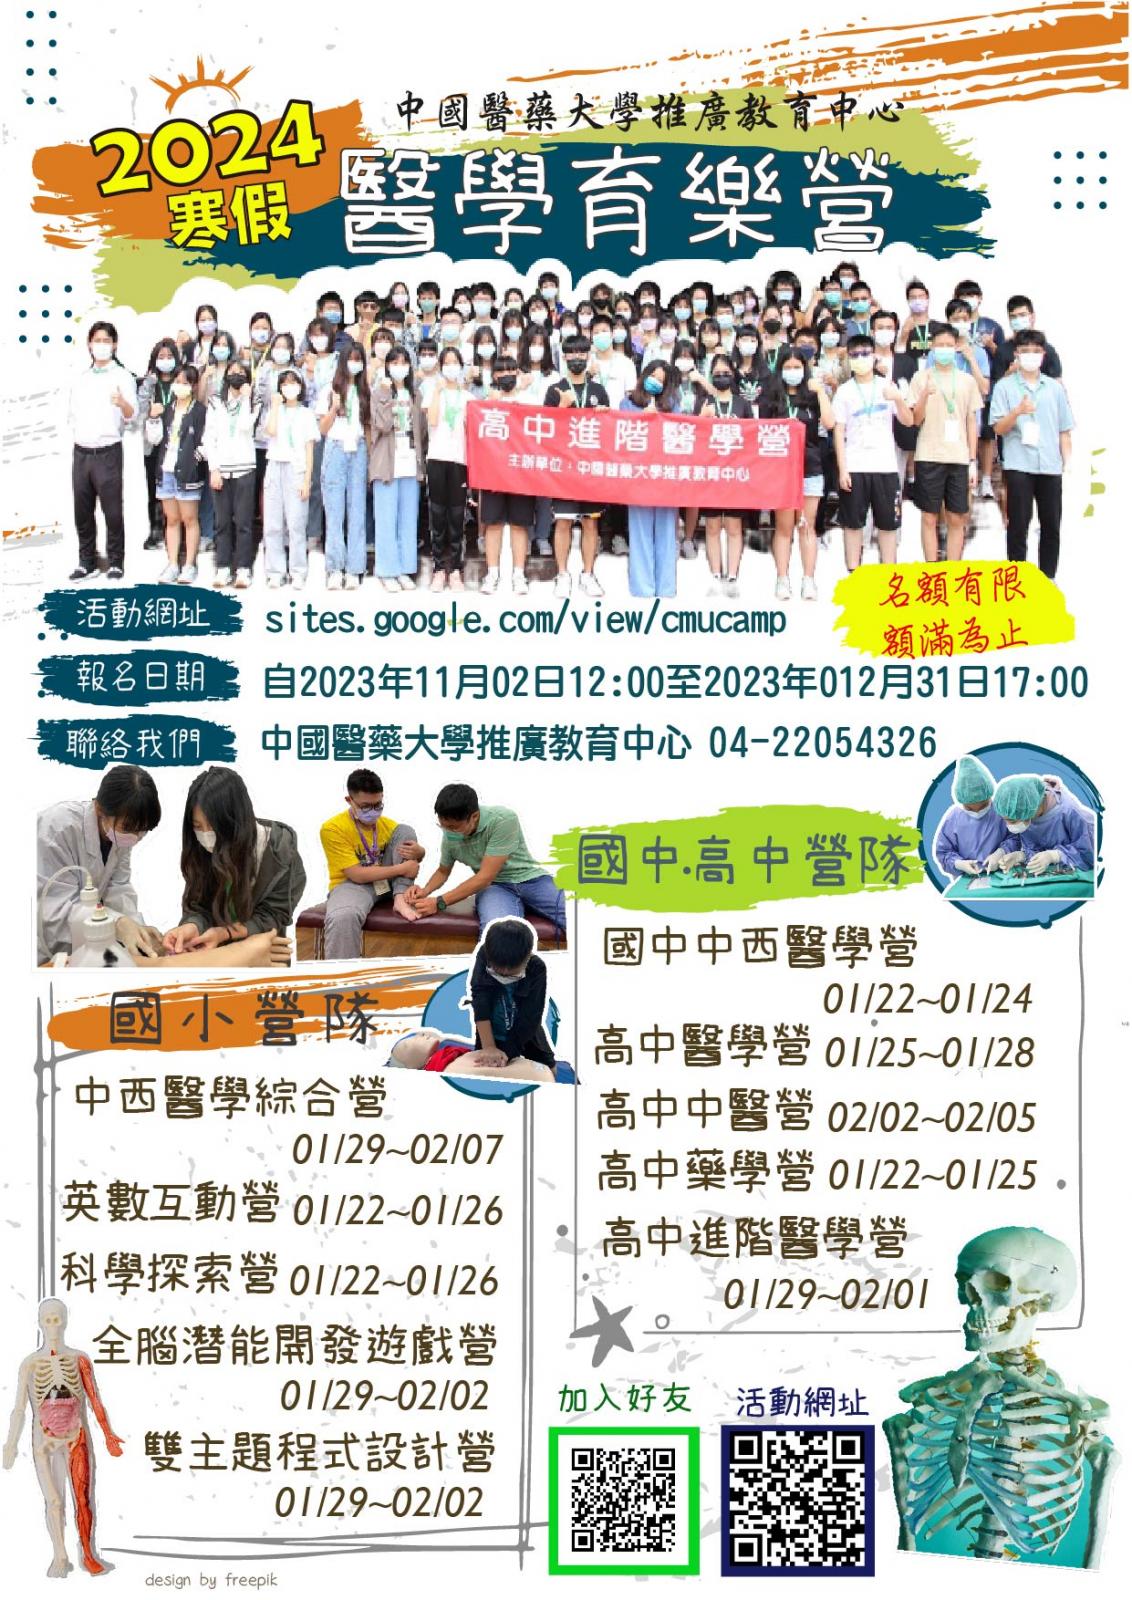 2023中國醫藥大學-高中、國中、國小醫學營及各類主題營隊海報